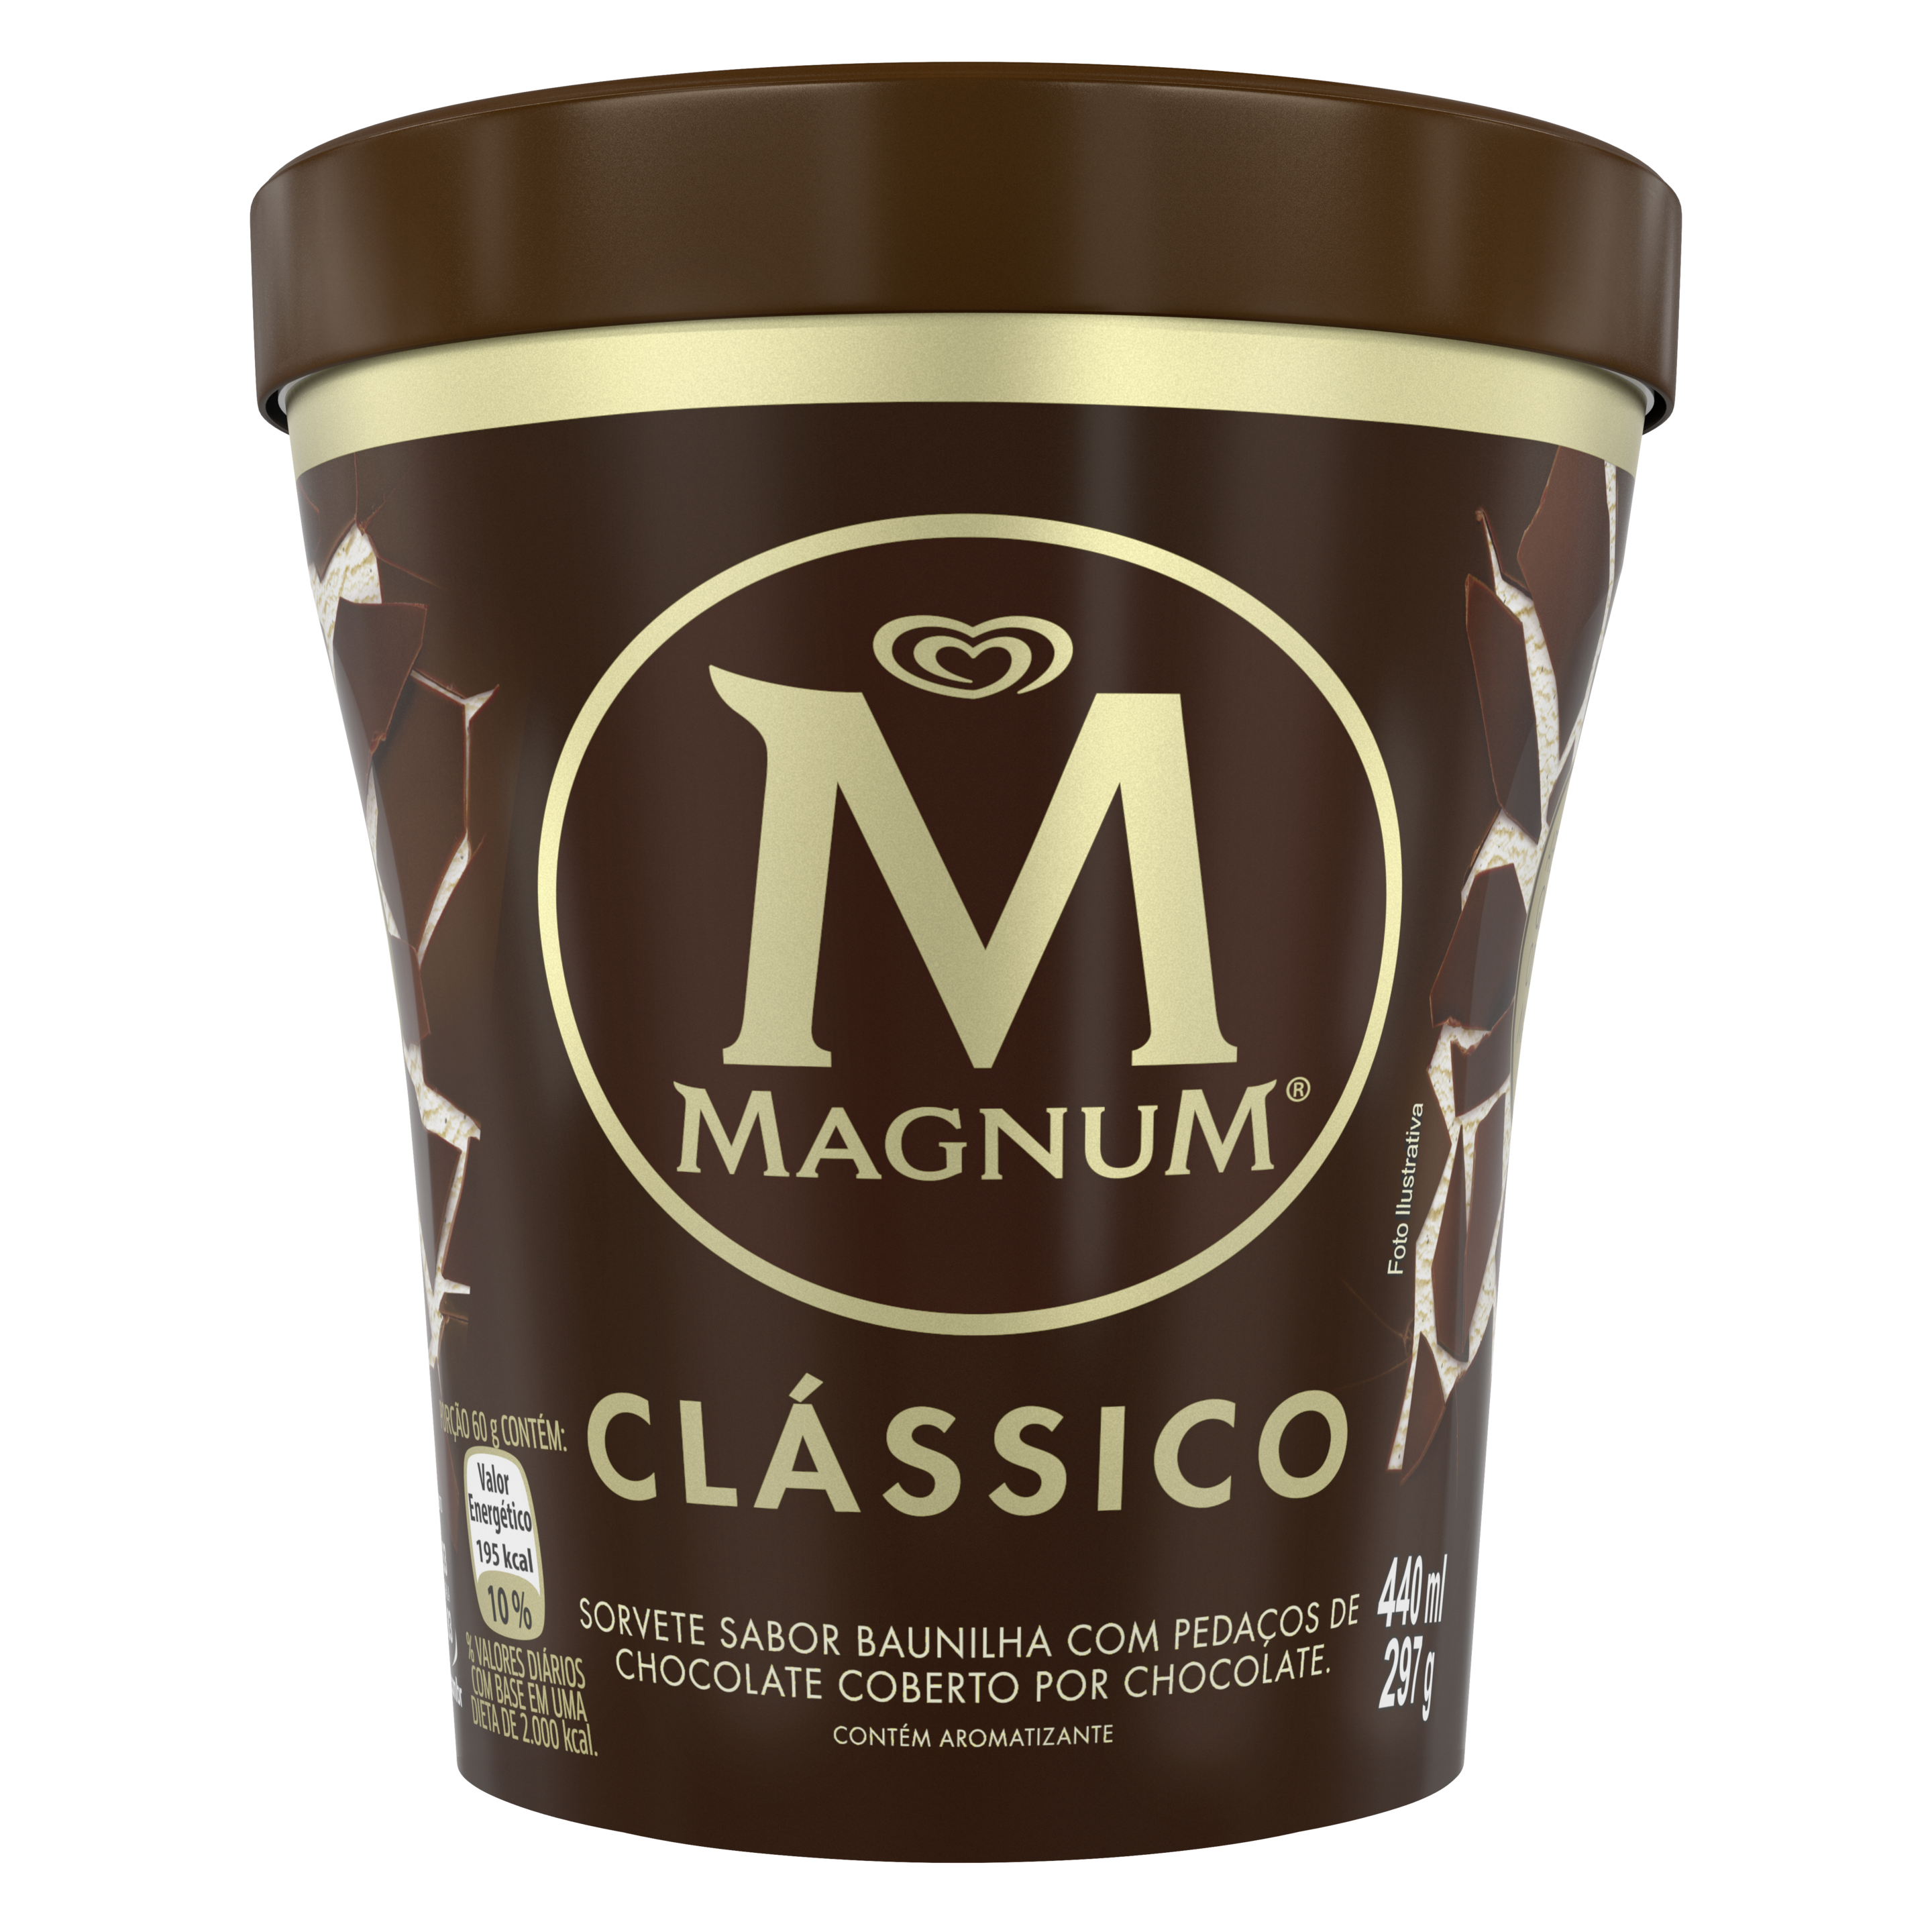 Descubra uma experiência única com o Novo formato de Magnum. Equilíbrio perfeito do cremoso e aveludado sorvete de baunilha com as irresistíveis e crocantes lascas de chocolate belga Magnum. Tudo isso